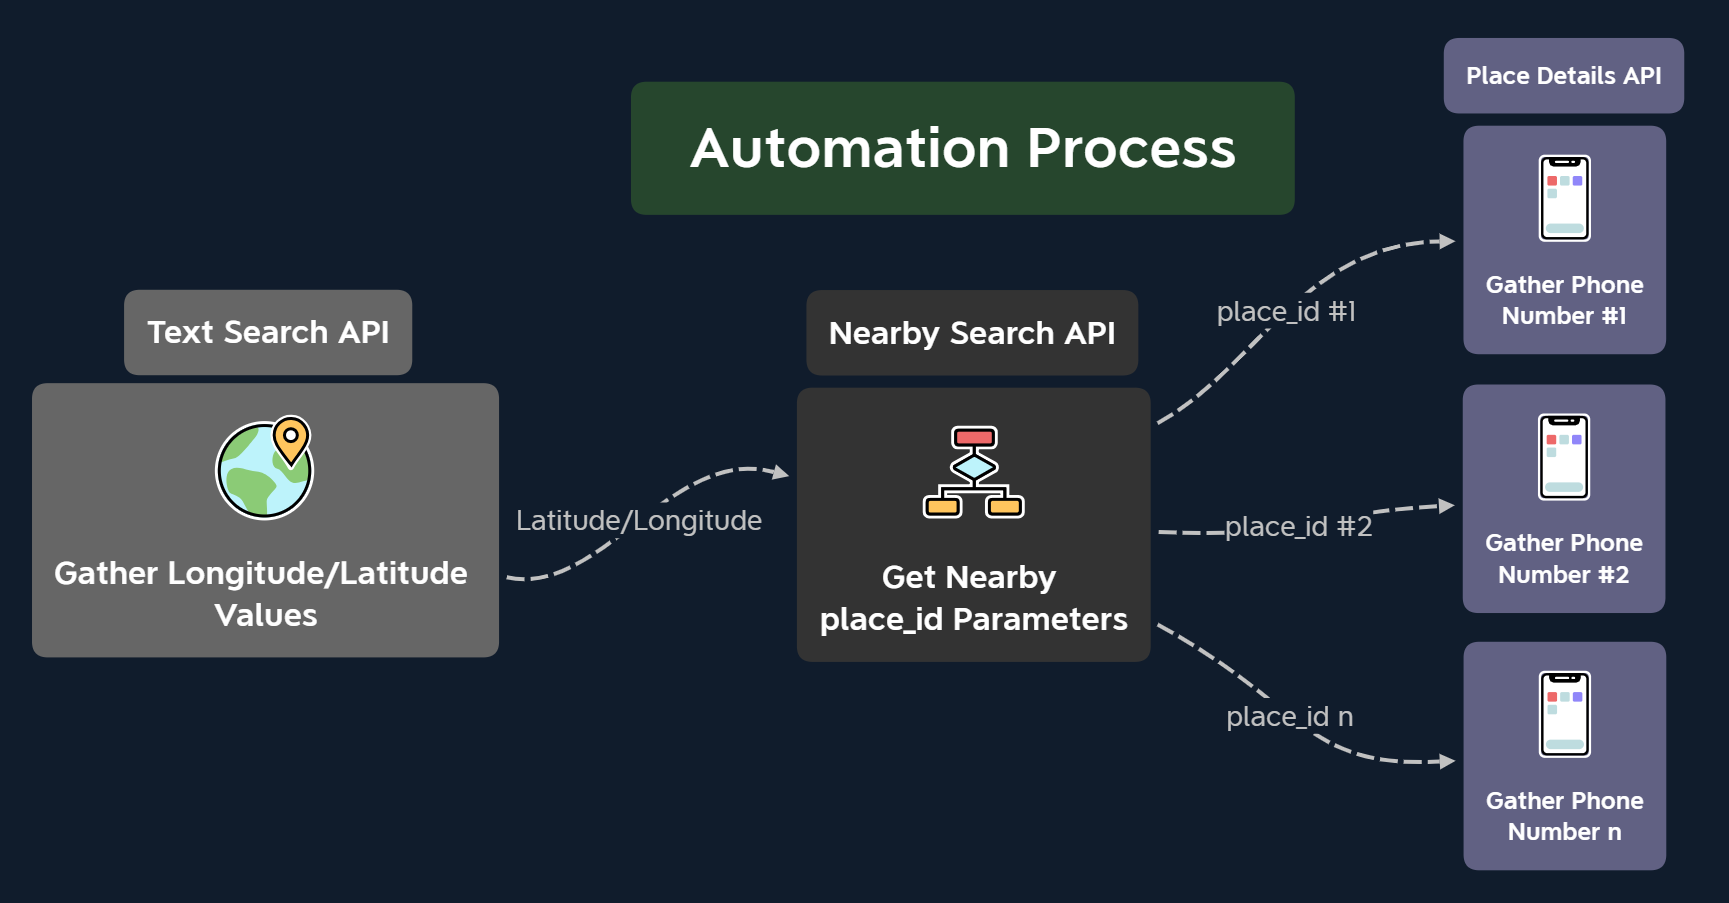 Automation Process Flow